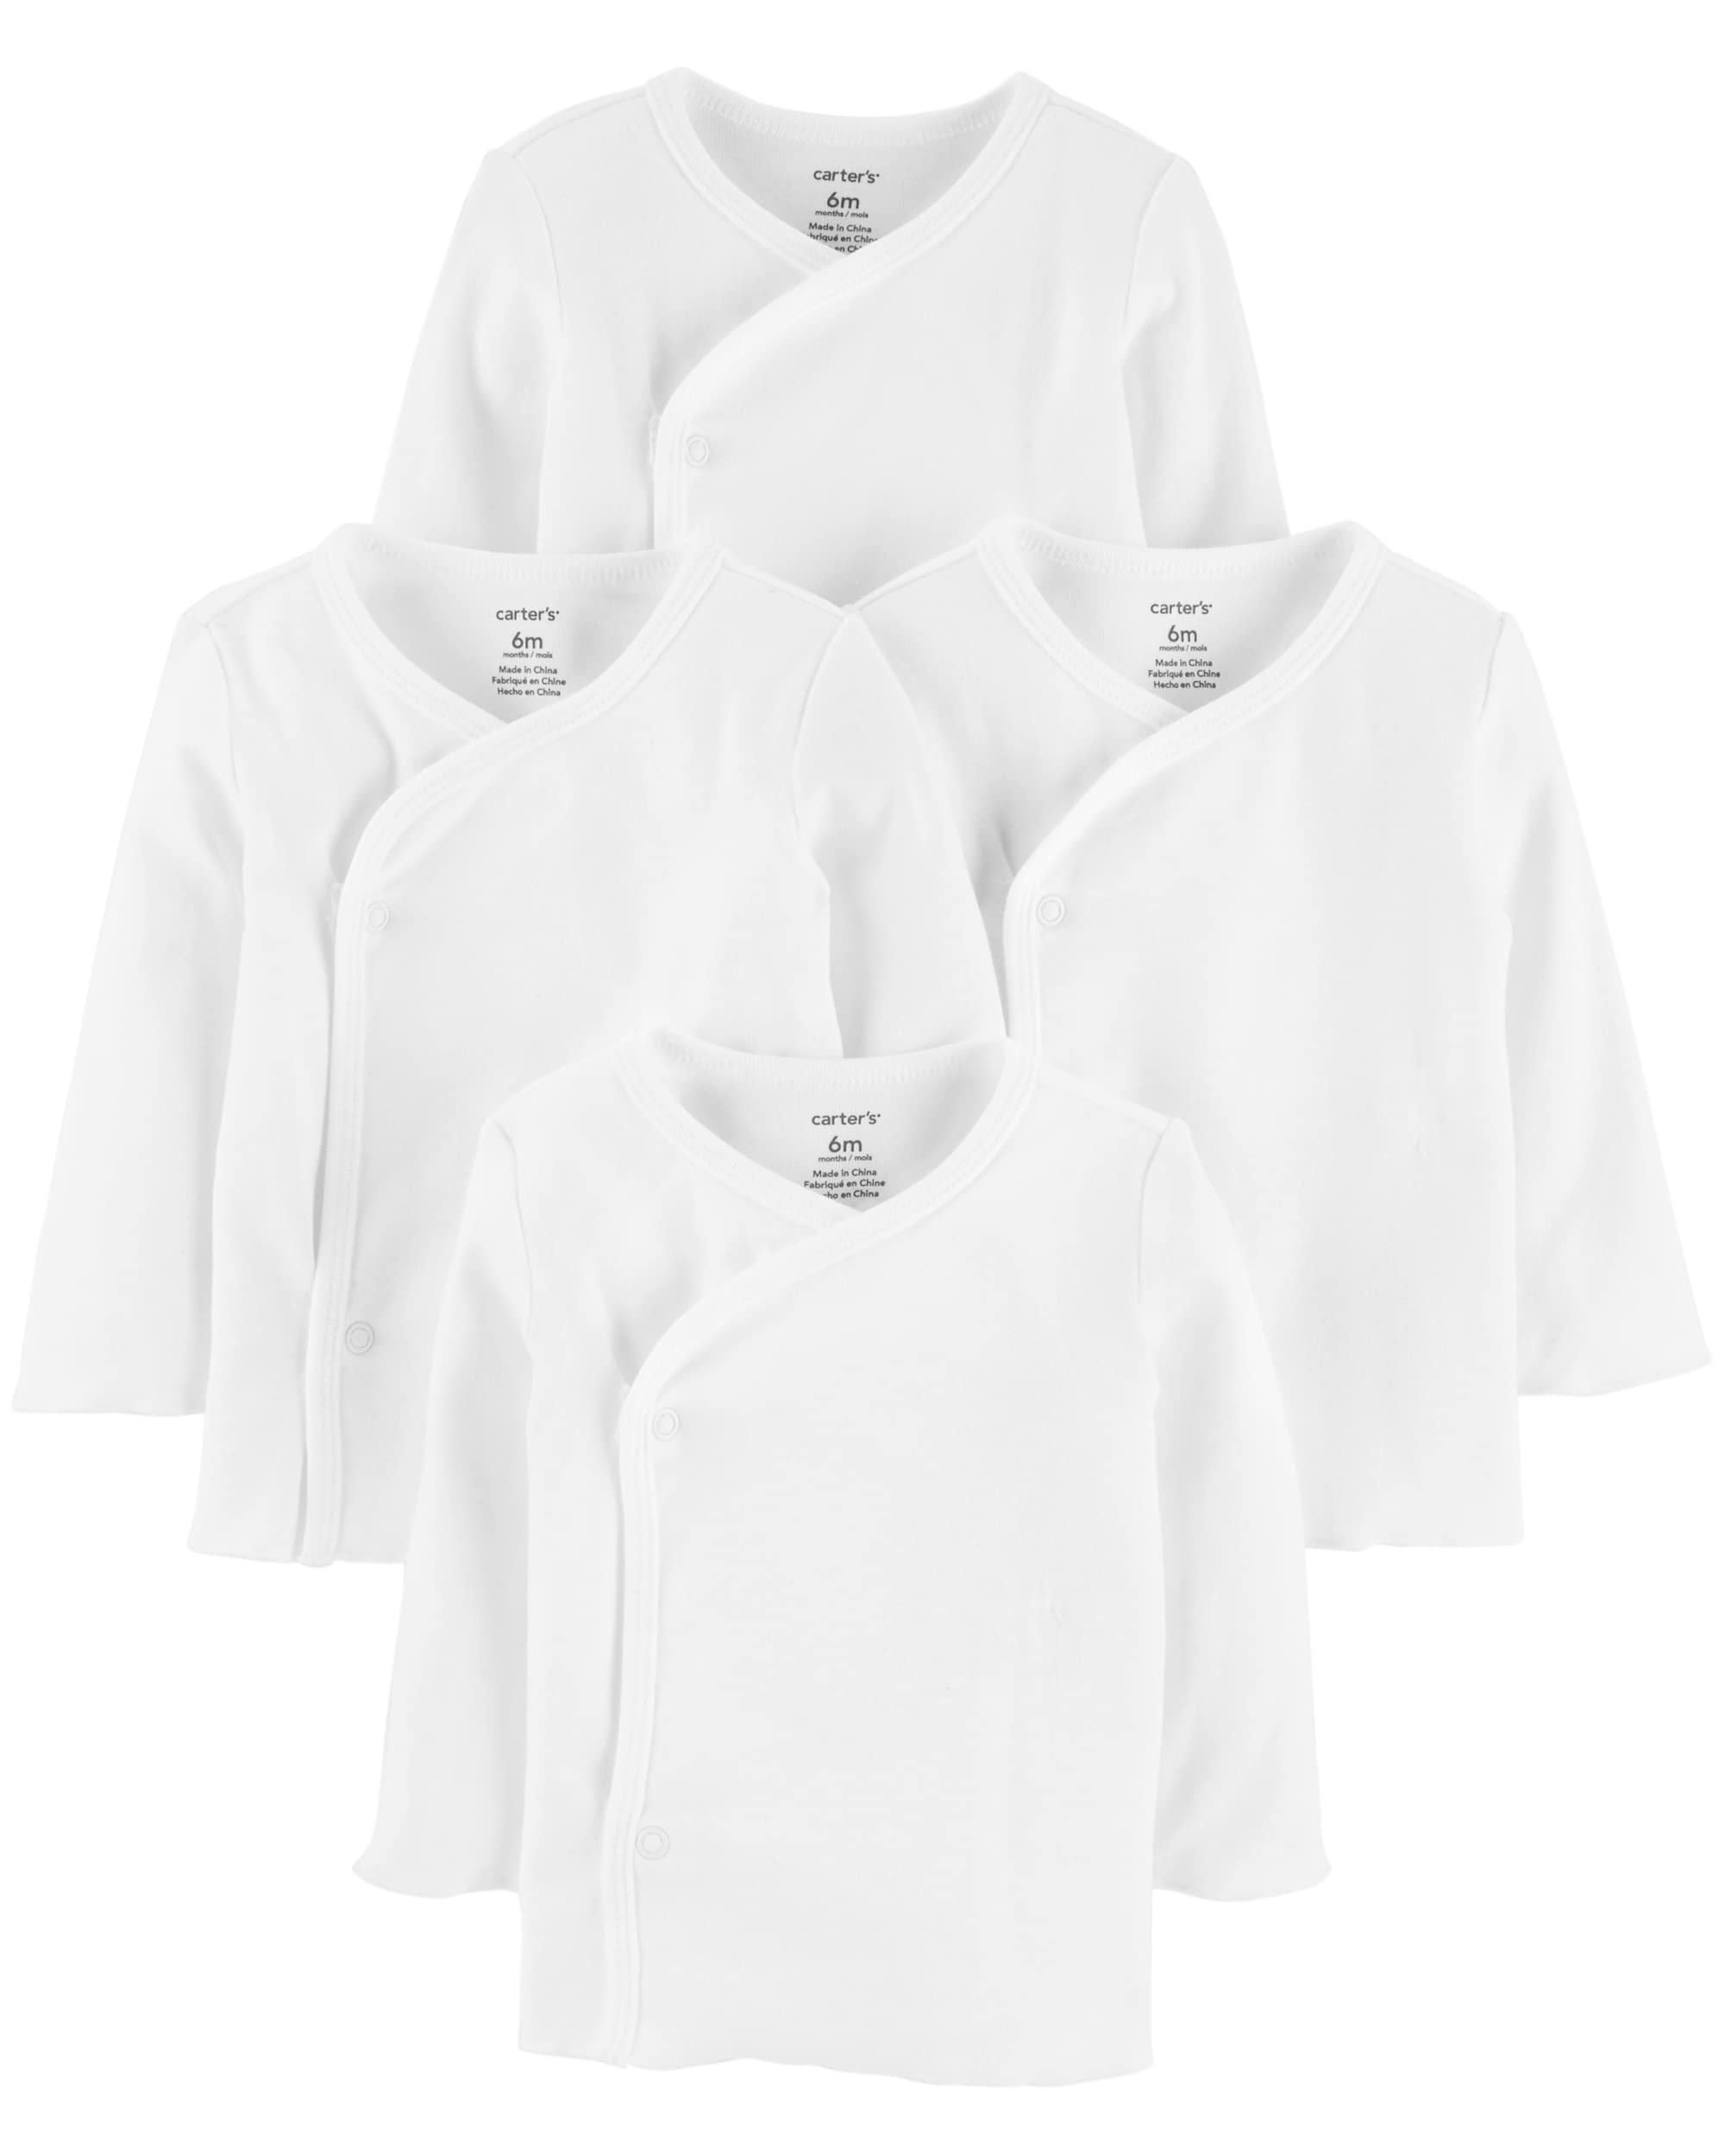 Carter's Unisex 4 Pack Long Sleeve Side Snap Mitten Cuff Shirt